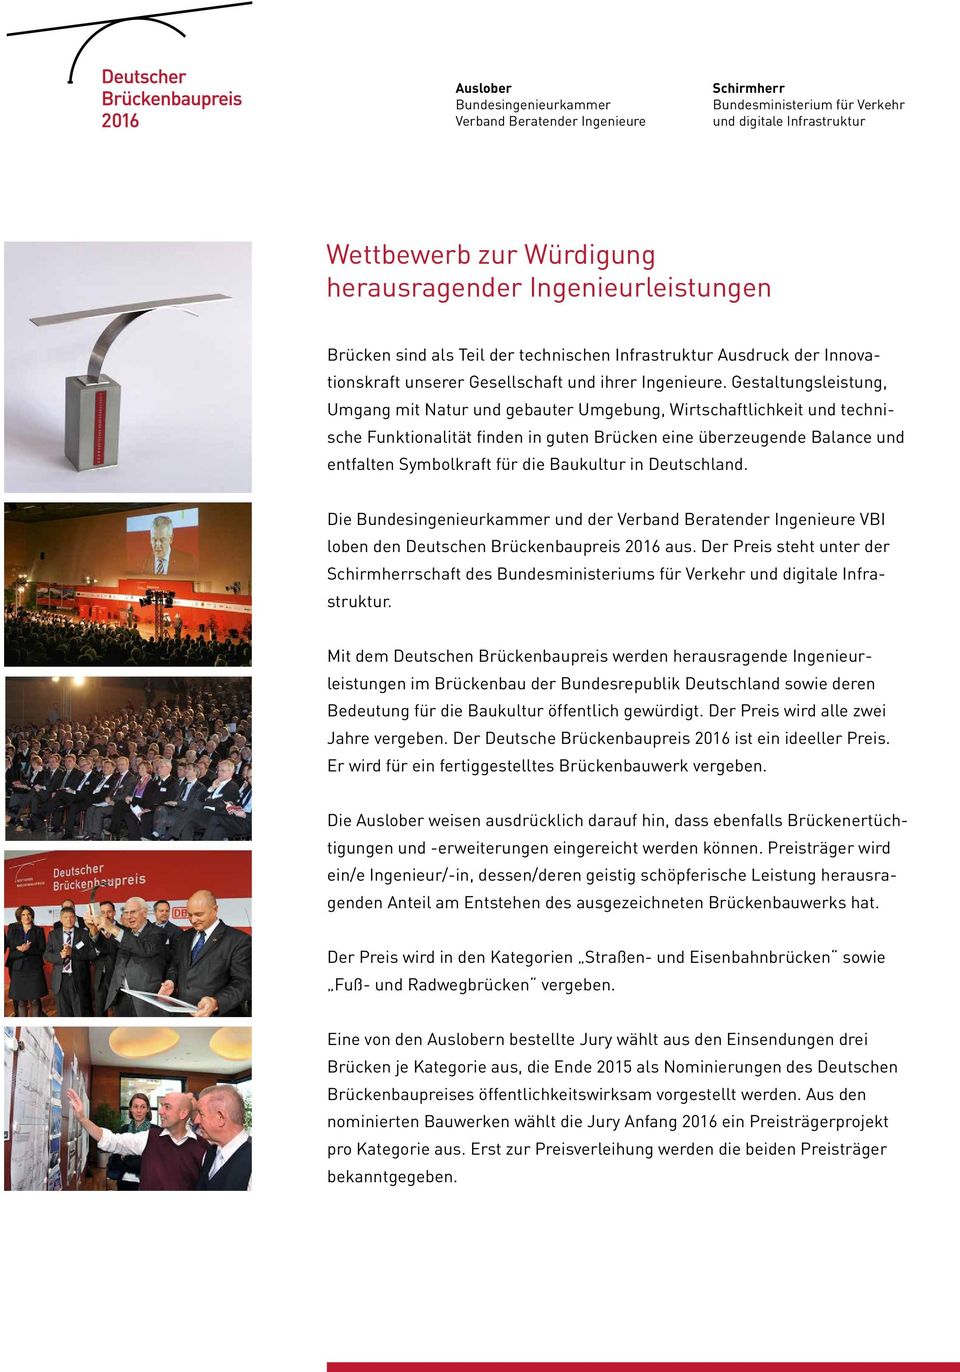 Baukultur in Deutschland. Die und der VBI loben den Deutschen Brückenbaupreis 2016 aus. Der Preis steht unter der schaft des Bundesministeriums für Verkehr.